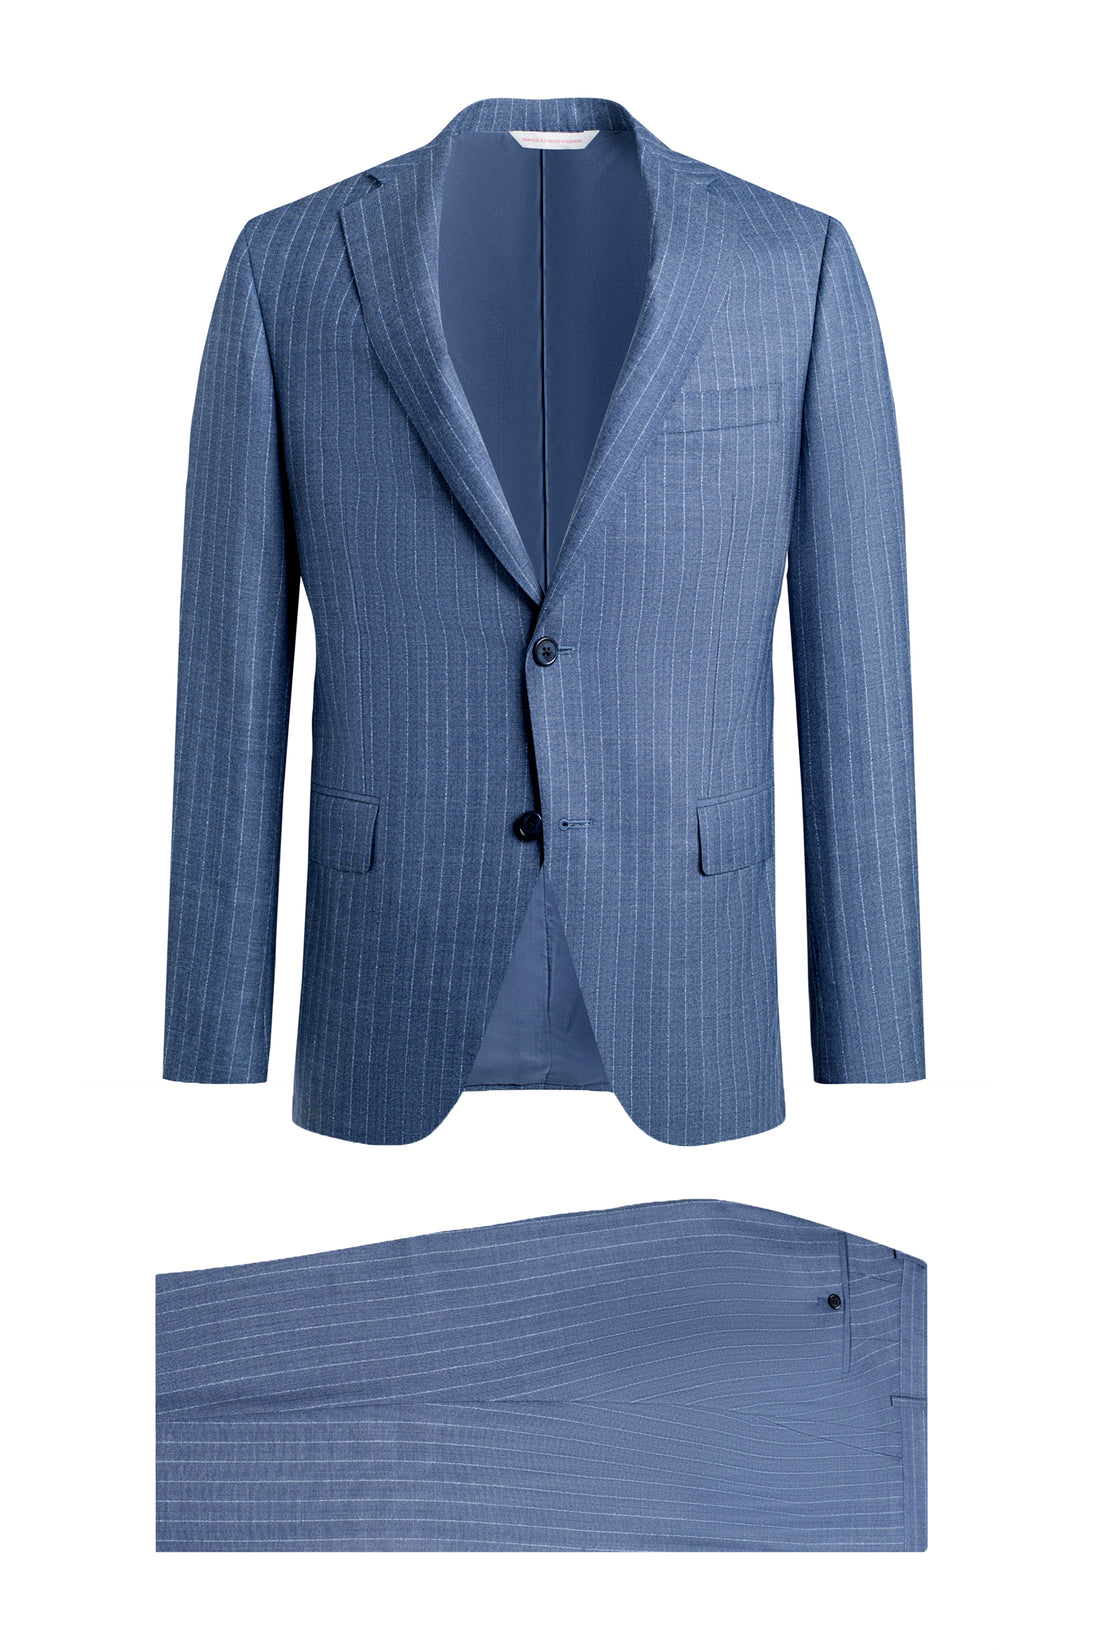 Blue Herringbone Stripe Trim Fit Suit